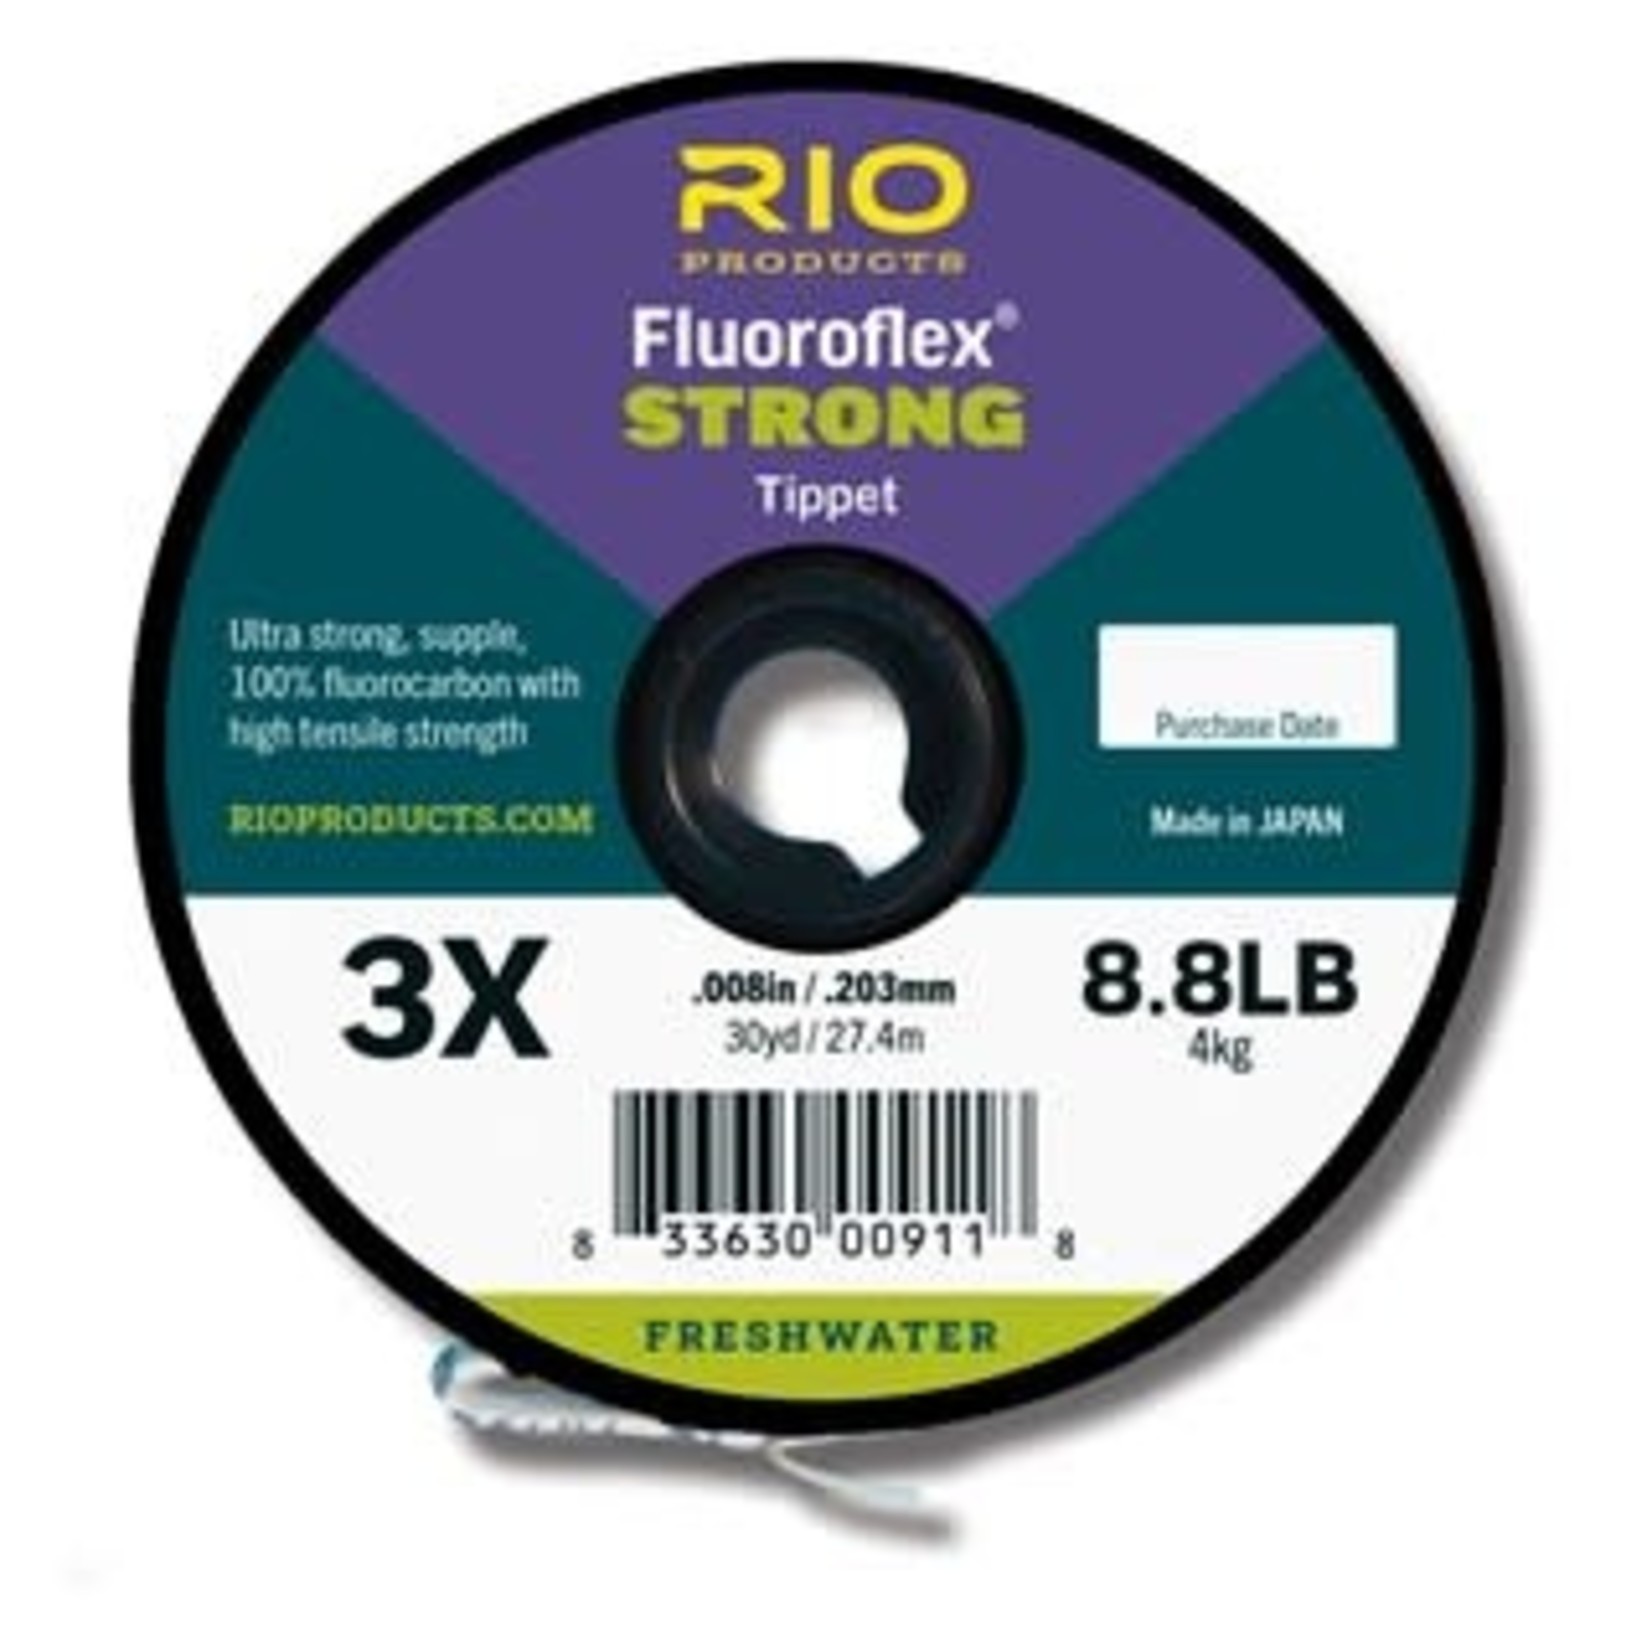 RIO Fluoroflex Strong Tippet -